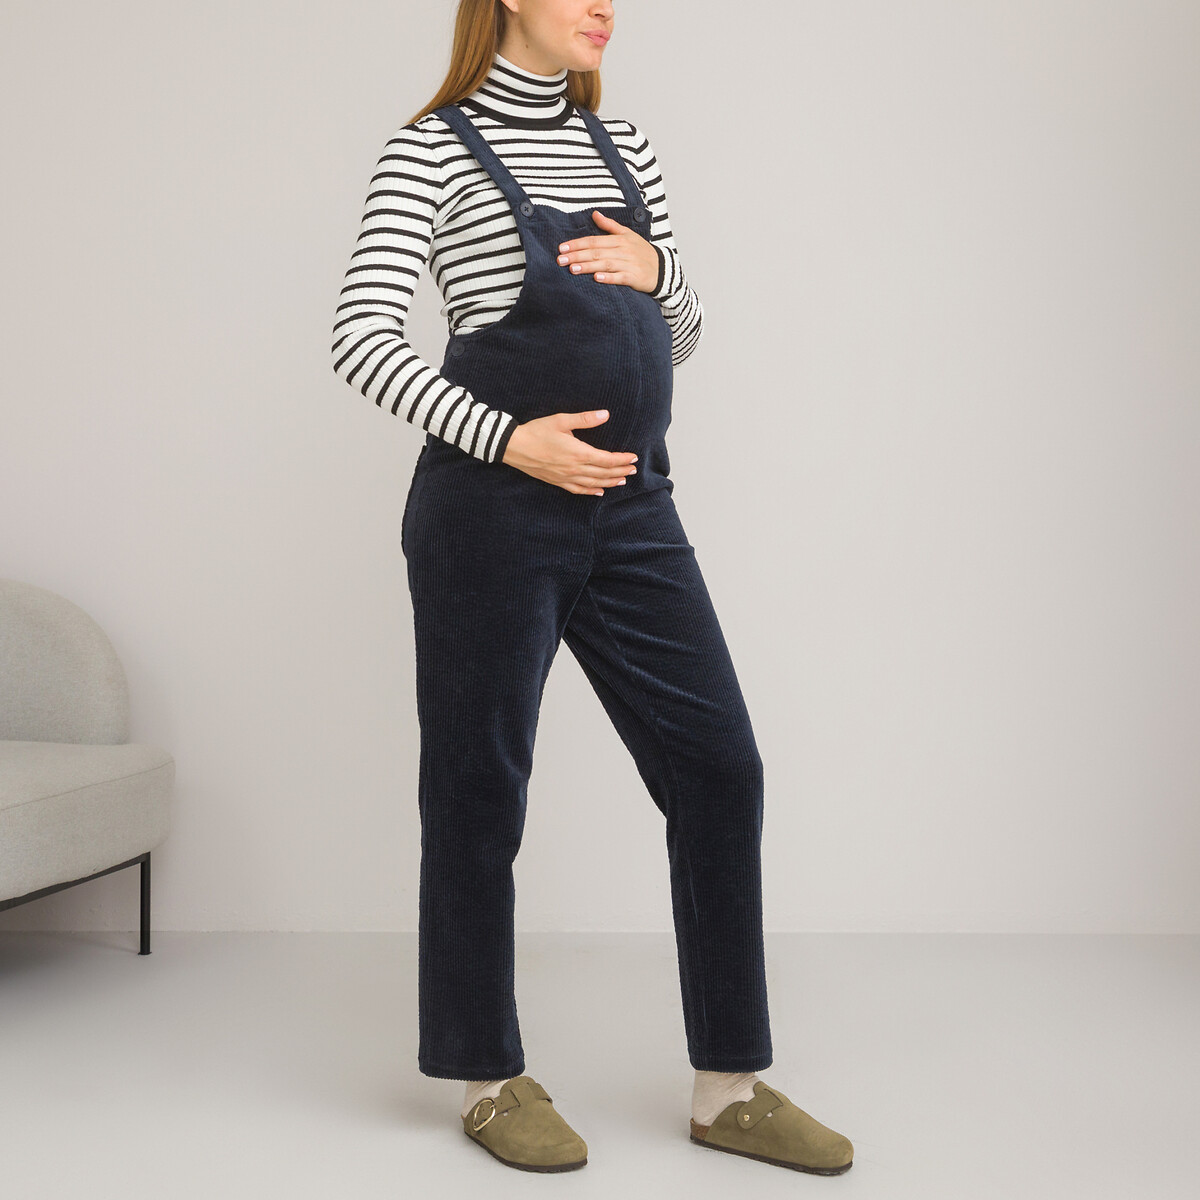 юбка для периода беременности прямая джинсовая 40 fr 46 rus синий Комбинезон для периода беременности из вельвета 46 (FR) - 52 (RUS) синий